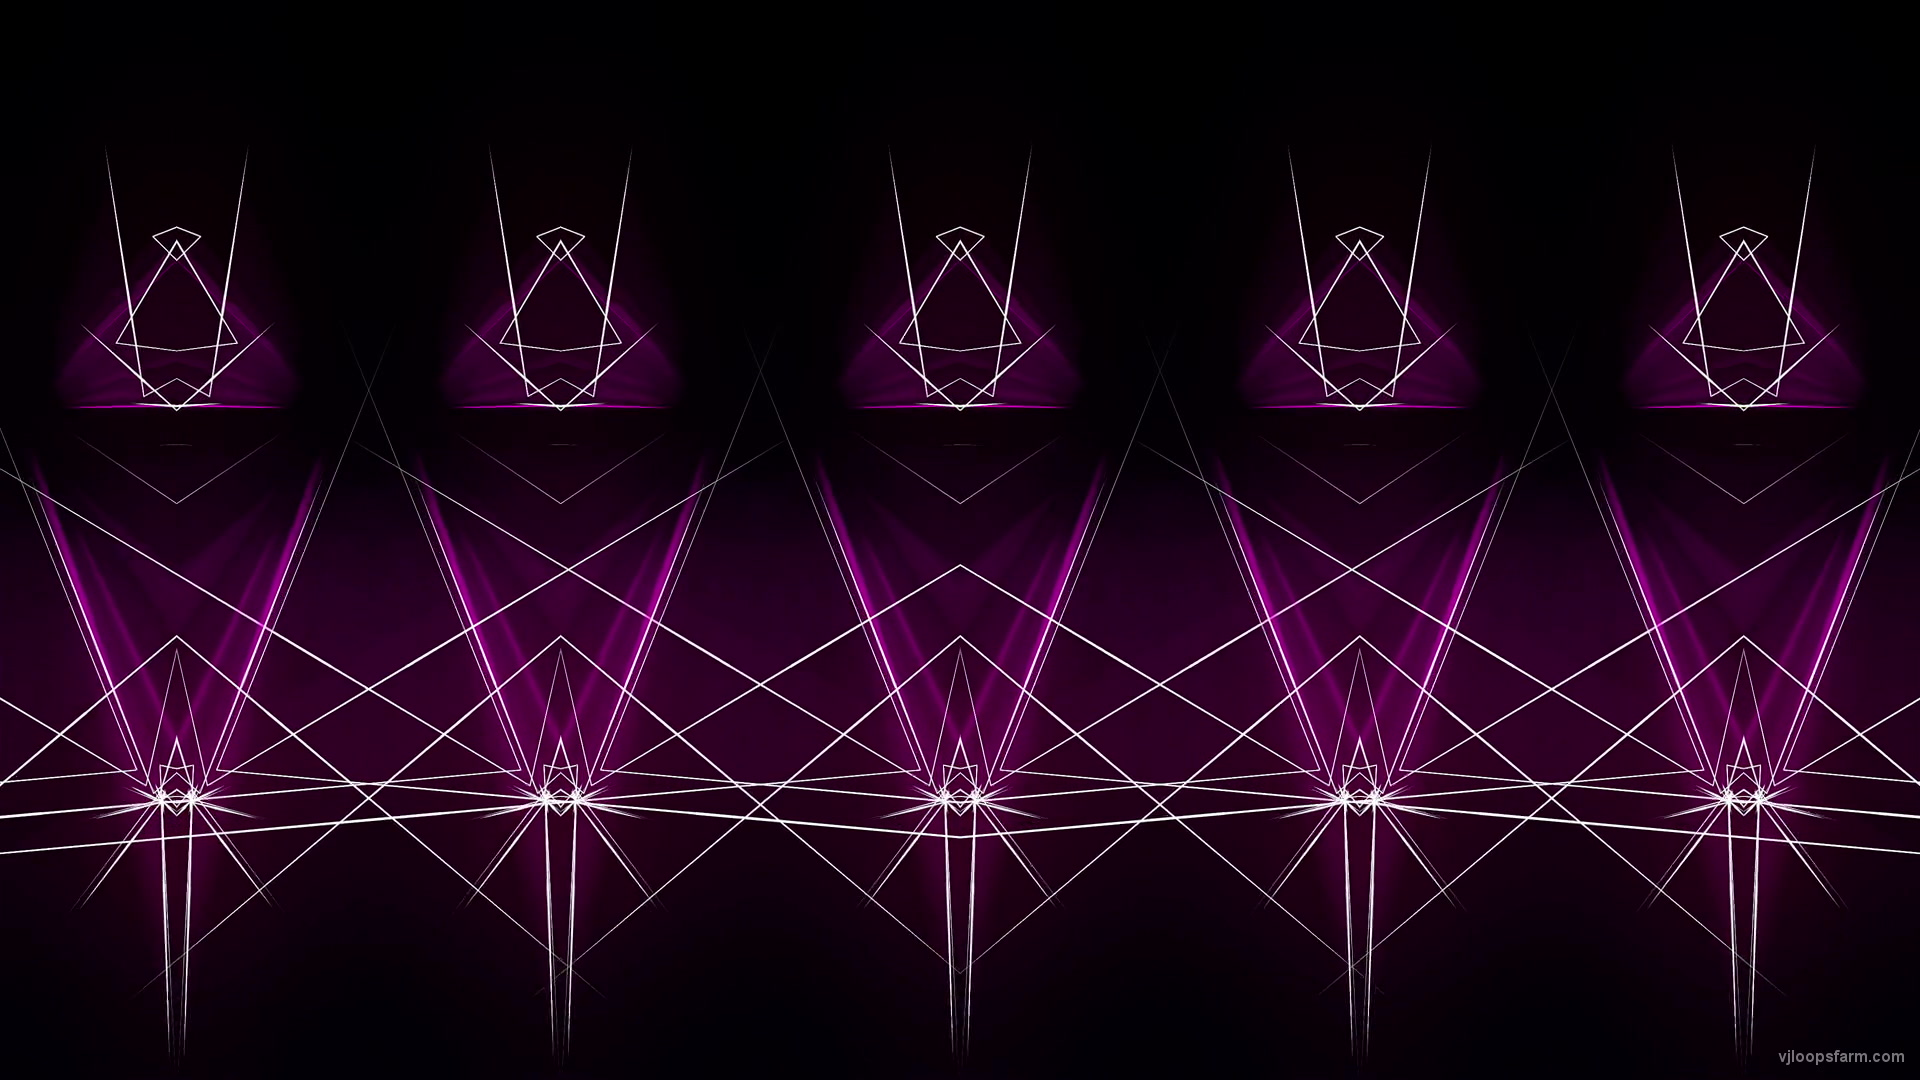 Abstract-Violet-Pink-Lines-Lasers-Video-Art-Ultra-HD-VJ-Loop-gnt4tj-1920_008 VJ Loops Farm